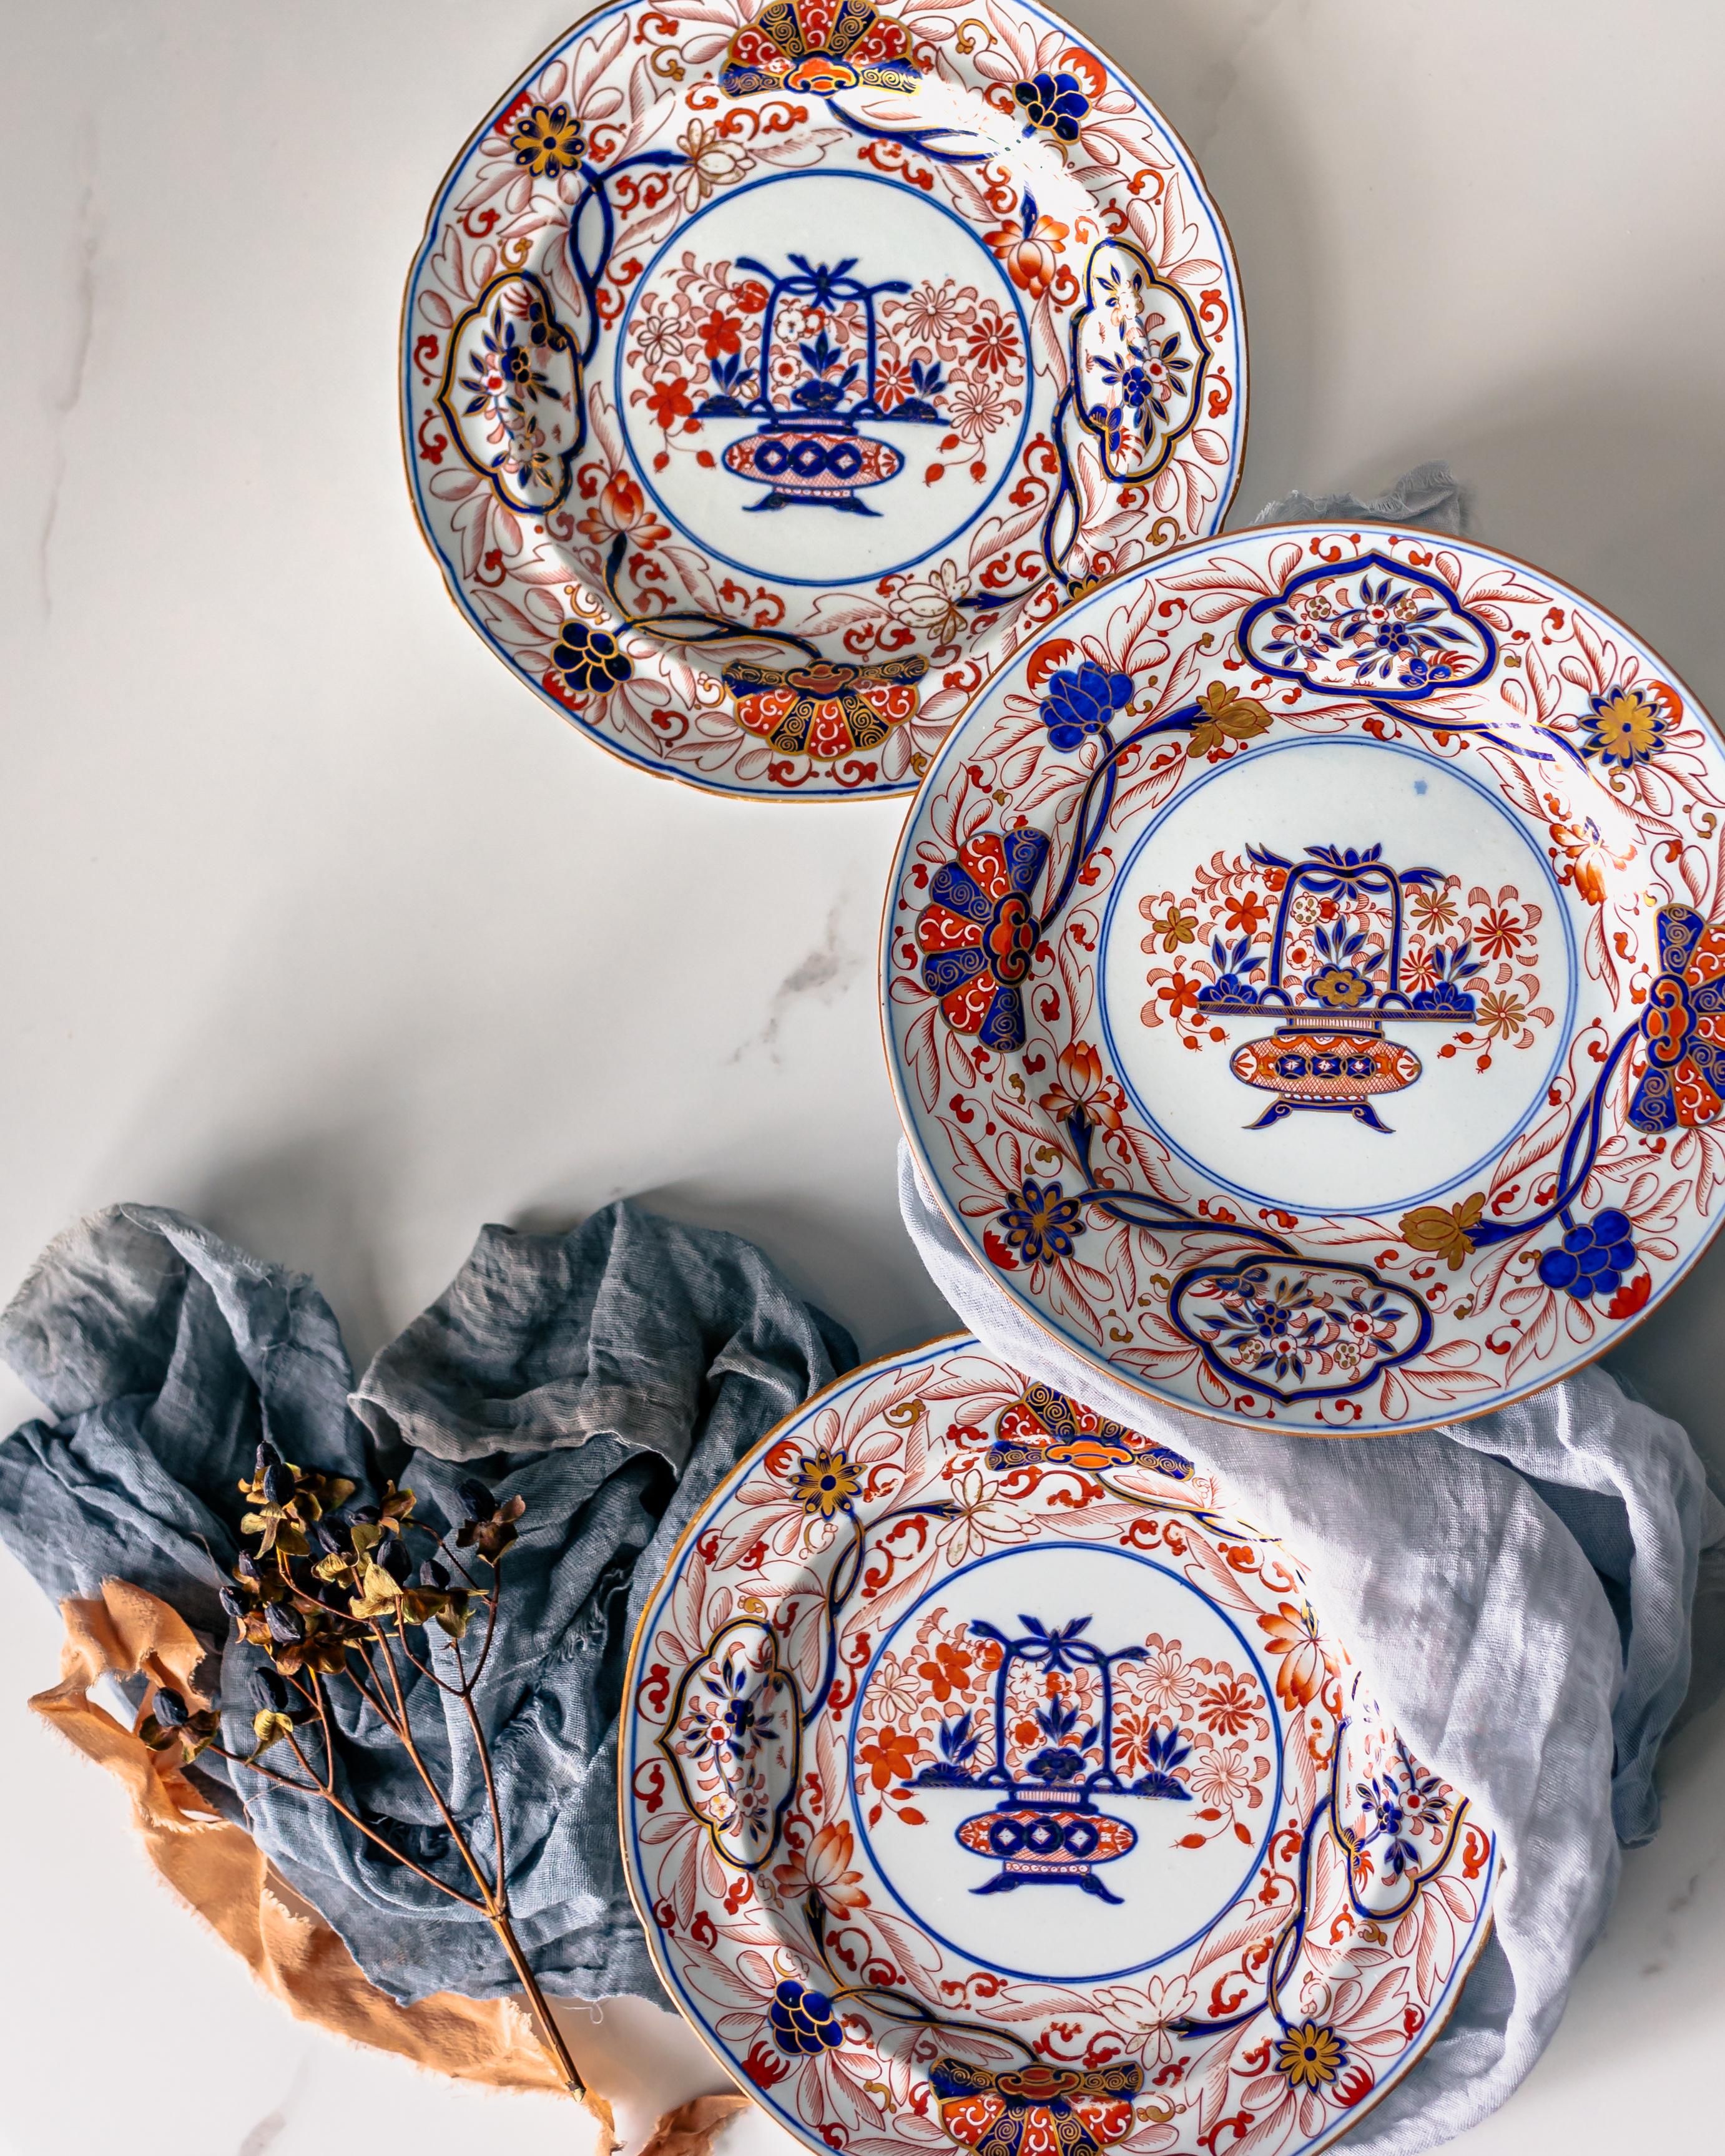 Un ensemble de 11 plats à dessert en pierre de fer de style Imari, fabriqués par Spode vers 1815.

Josiah Spode II a commencé à produire de la porcelaine de pierre en 1813 comme alternative à la porcelaine. La porcelaine de pierre, également connue